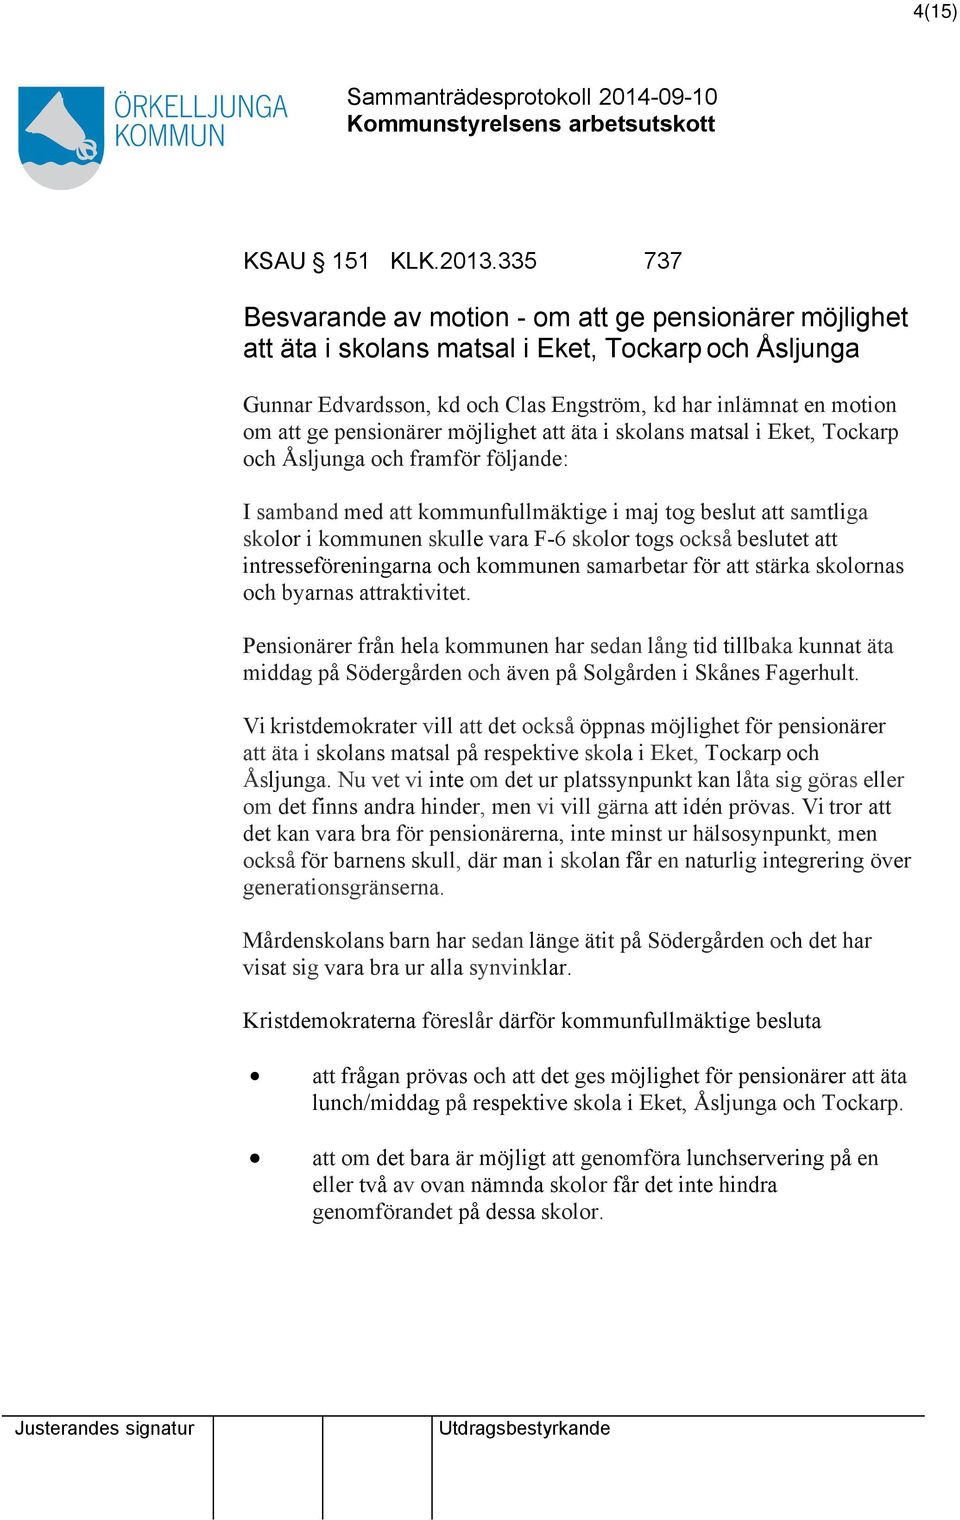 möjlighet äta i skolans matsal i Eket, Tockarp och Åsljunga och framför följande: I samband med kommunfullmäktige i maj tog beslut samtliga skolor i kommunen skulle vara F-6 skolor togs också